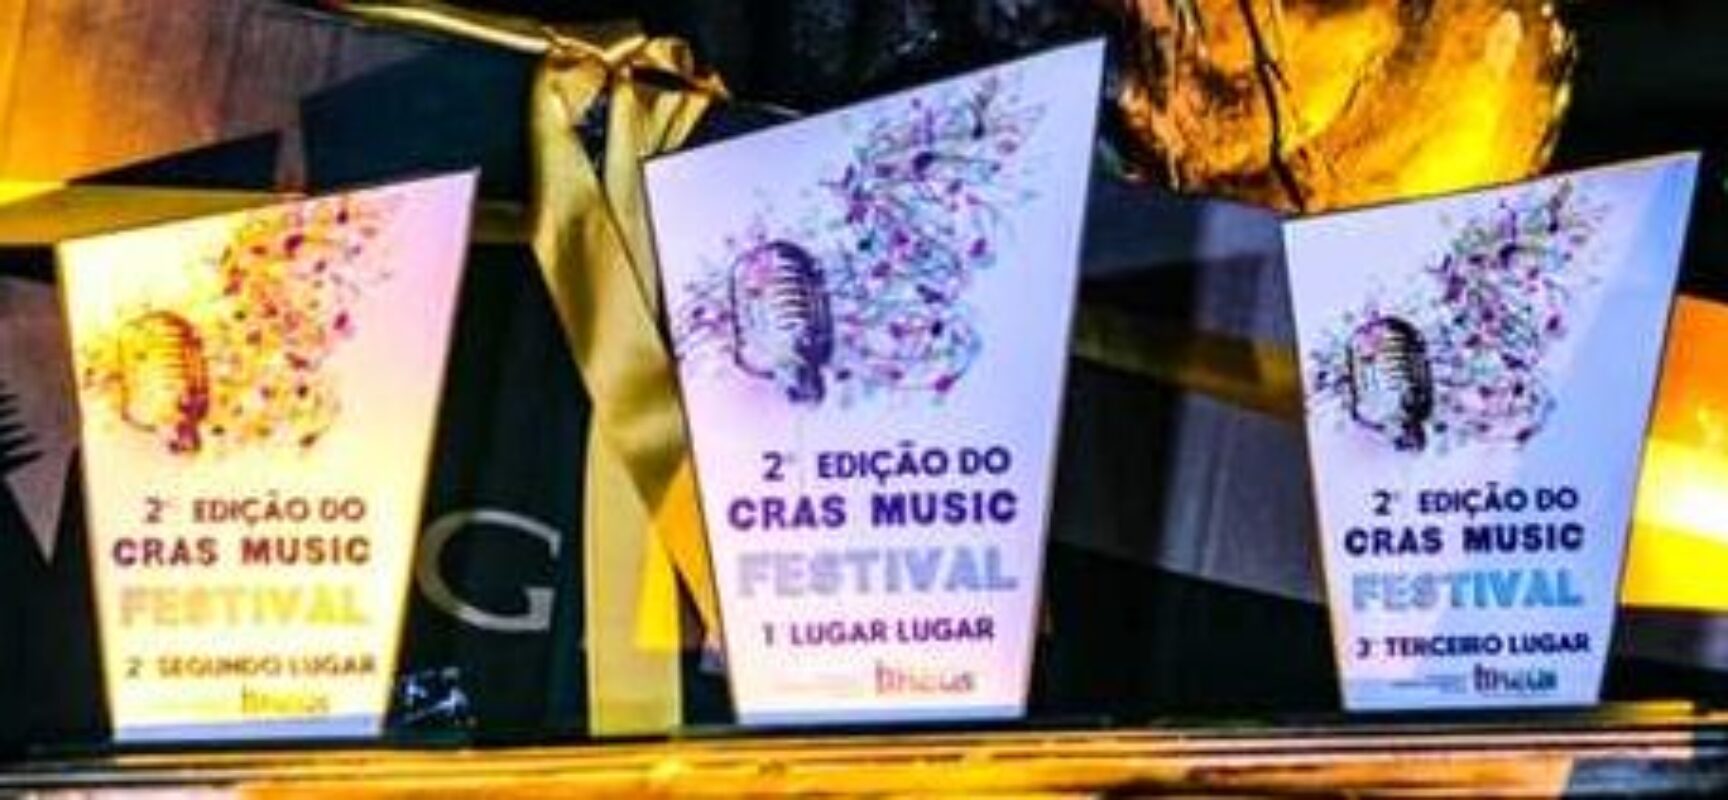 Final da 2ª edição do Cras Music Festival revela talentos da música em Ilhéus